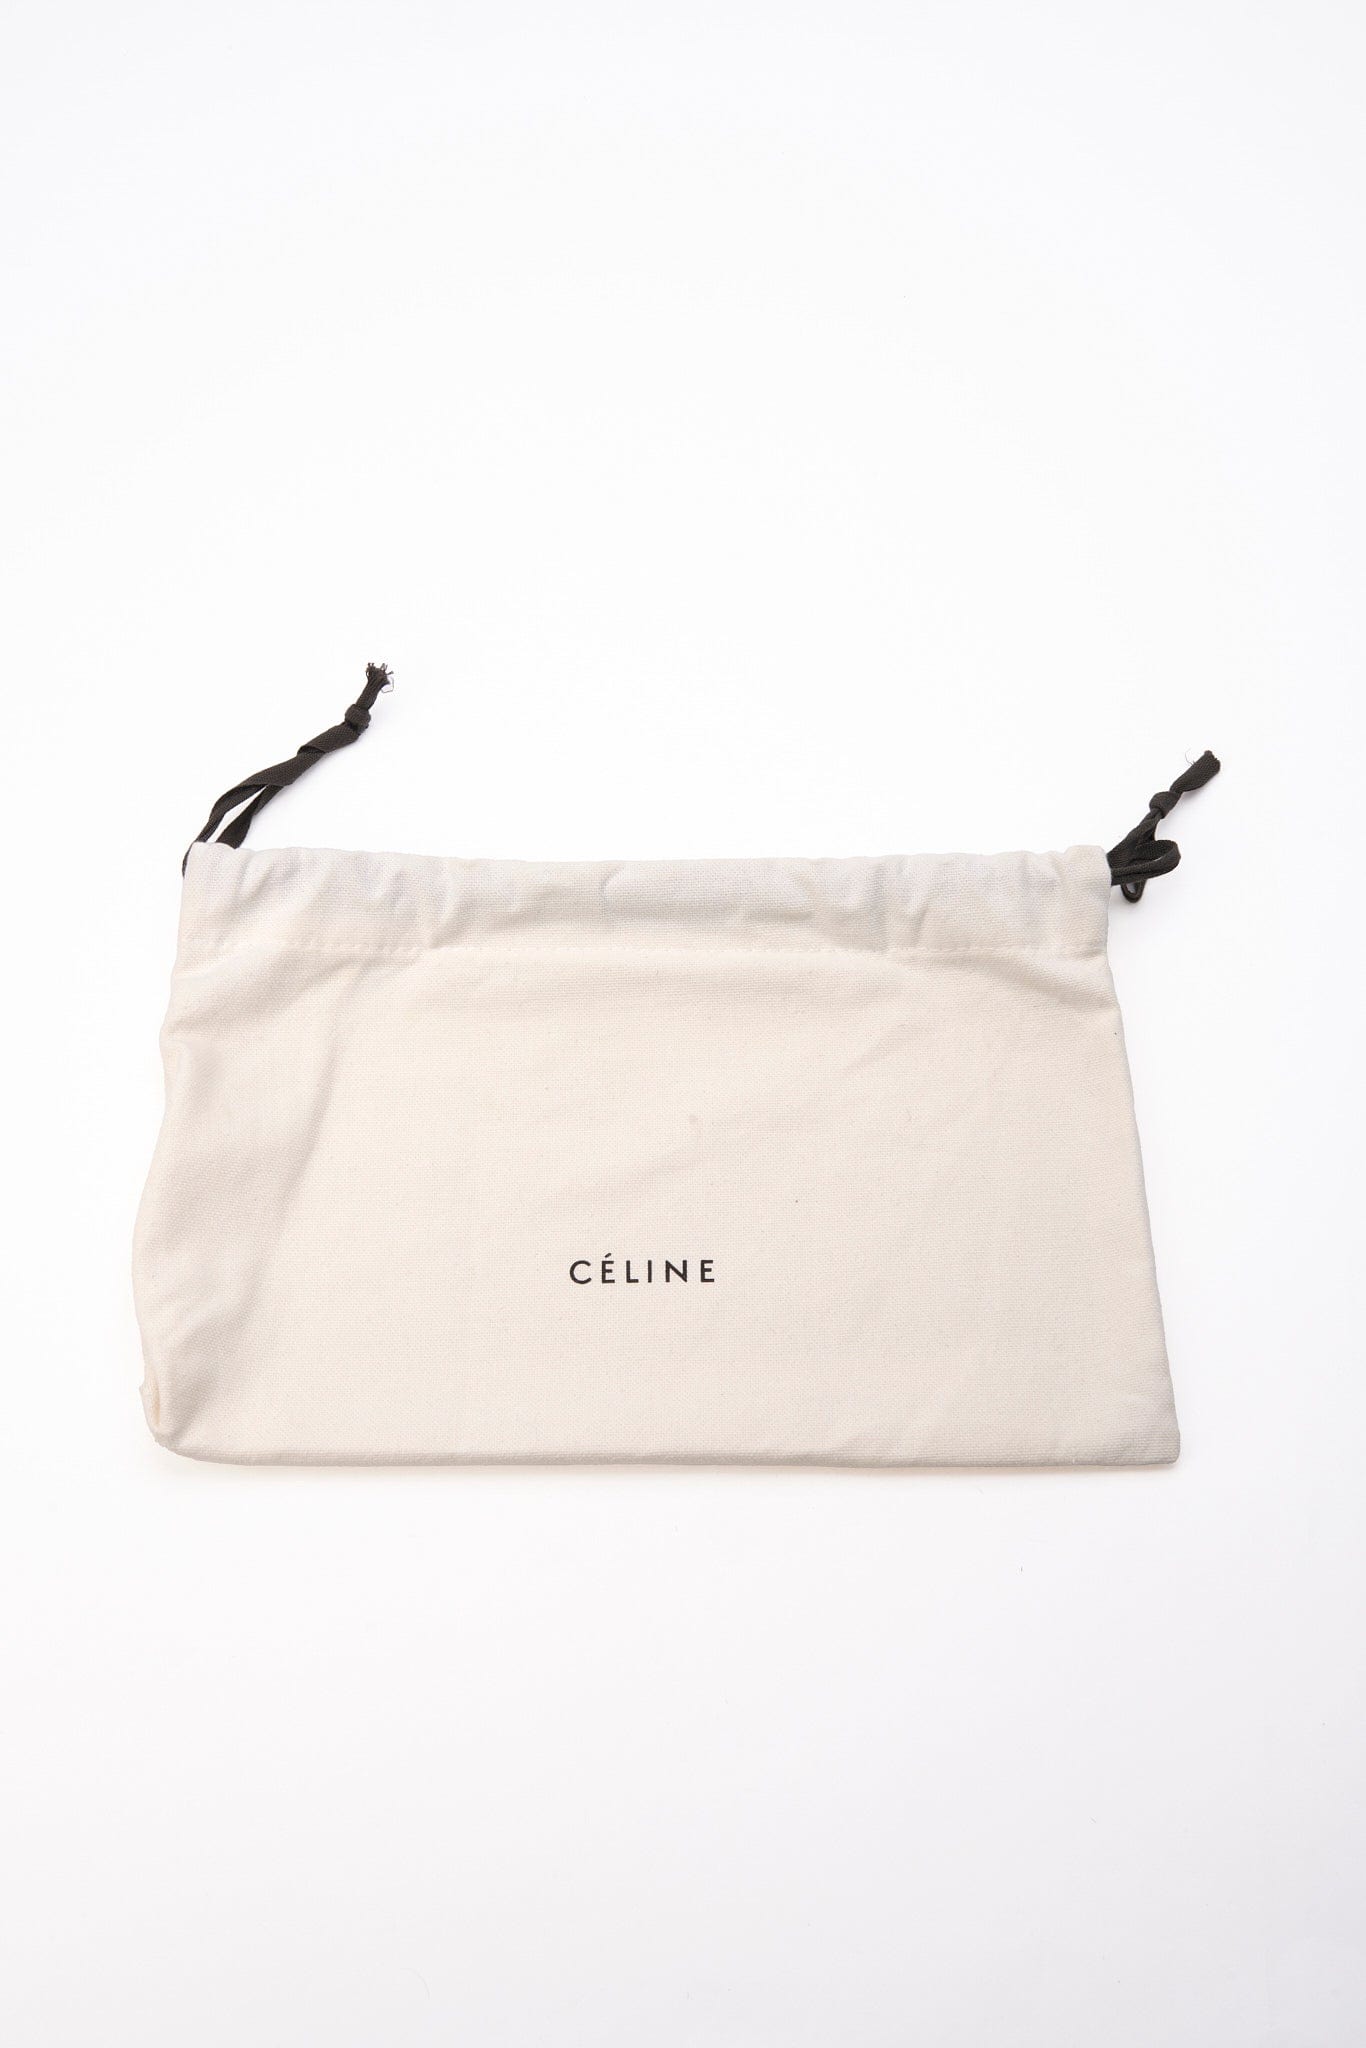 Céline Leopard Printed Calf Hair Clutch Bag